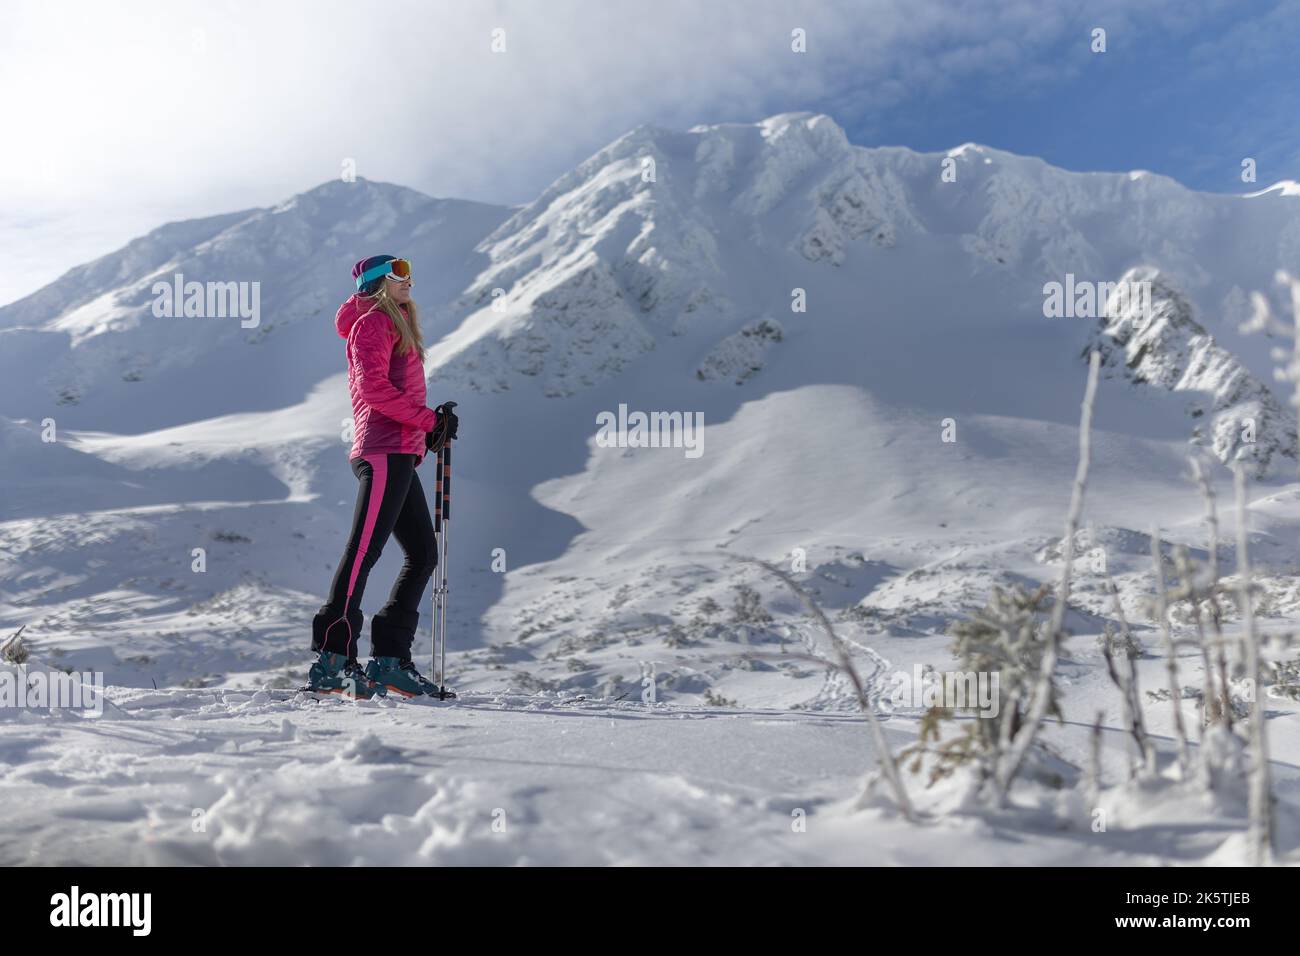 Sciatore di backcountry femminile che si sta camminando fino alla cima di una cima nevosa nei bassi Tatra in Slovacchia, guardando la macchina fotografica. Foto Stock